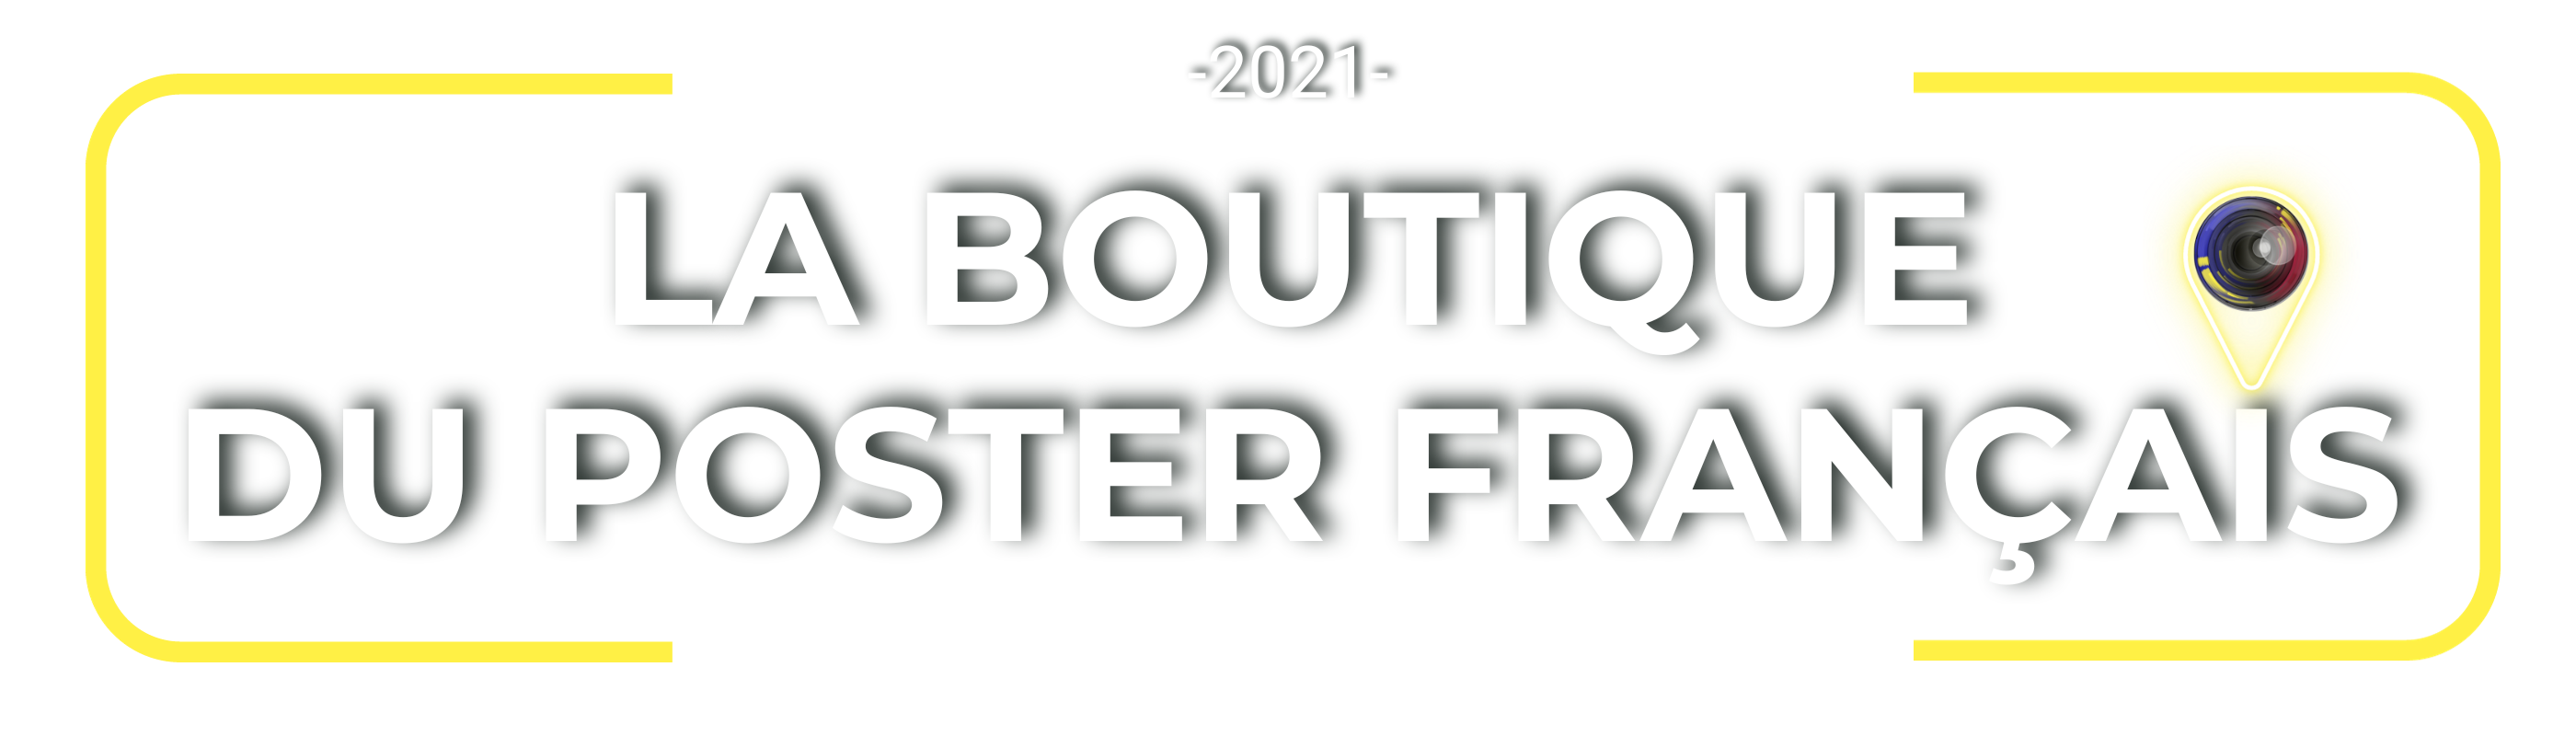 du poster La boutique Français Une boutique de photographie crée par un photographe. 2021